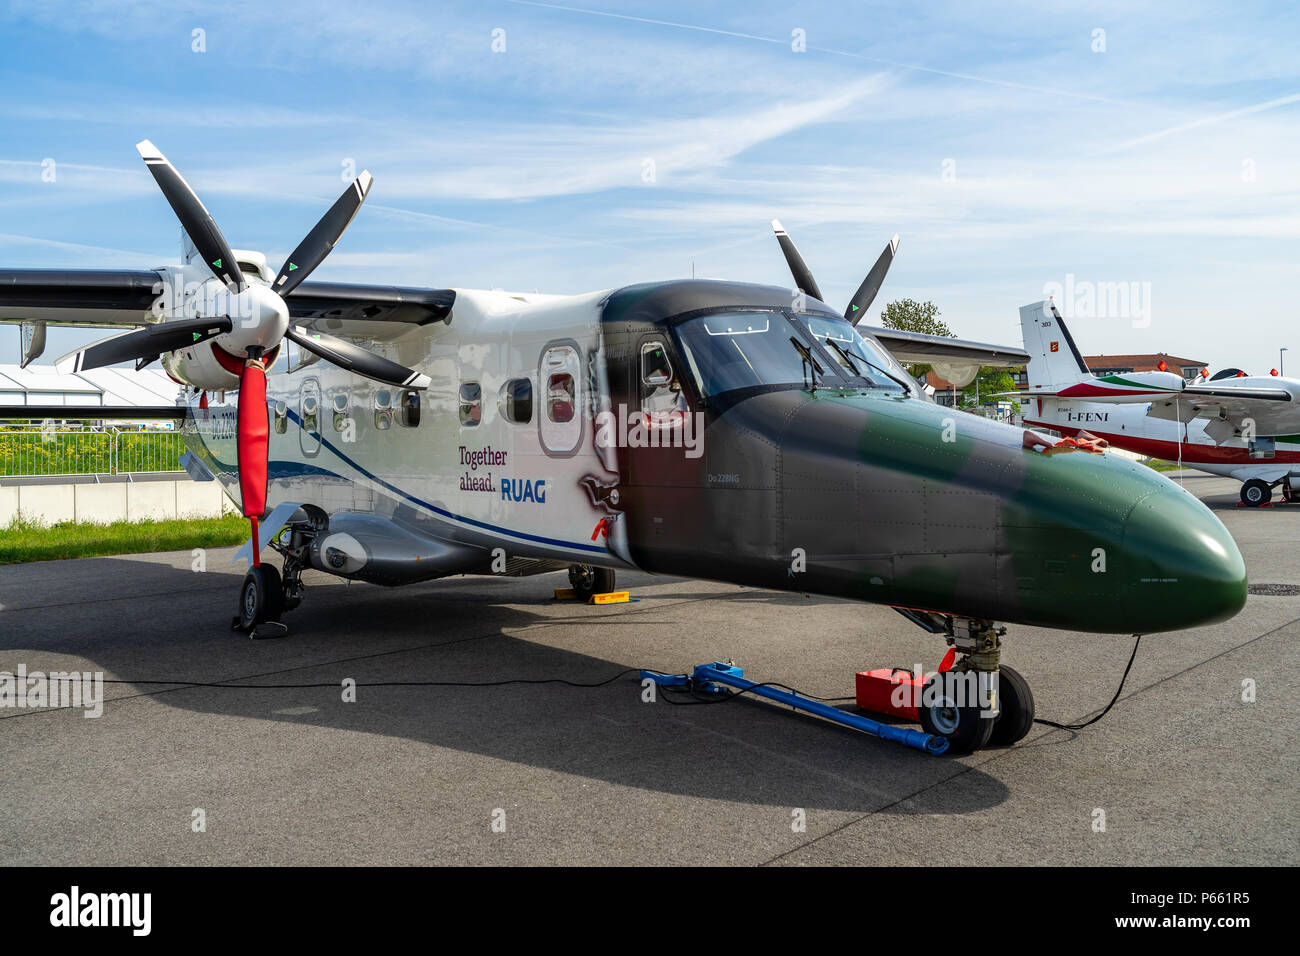 Ein twin-Dienstprogramm STOL Turboprop Flugzeuge, Dornier 228 NG (Neue Generation). RUAG Aerospace Services GmbH. Ausstellung die ILA Berlin Air Show 2018 Stockfoto